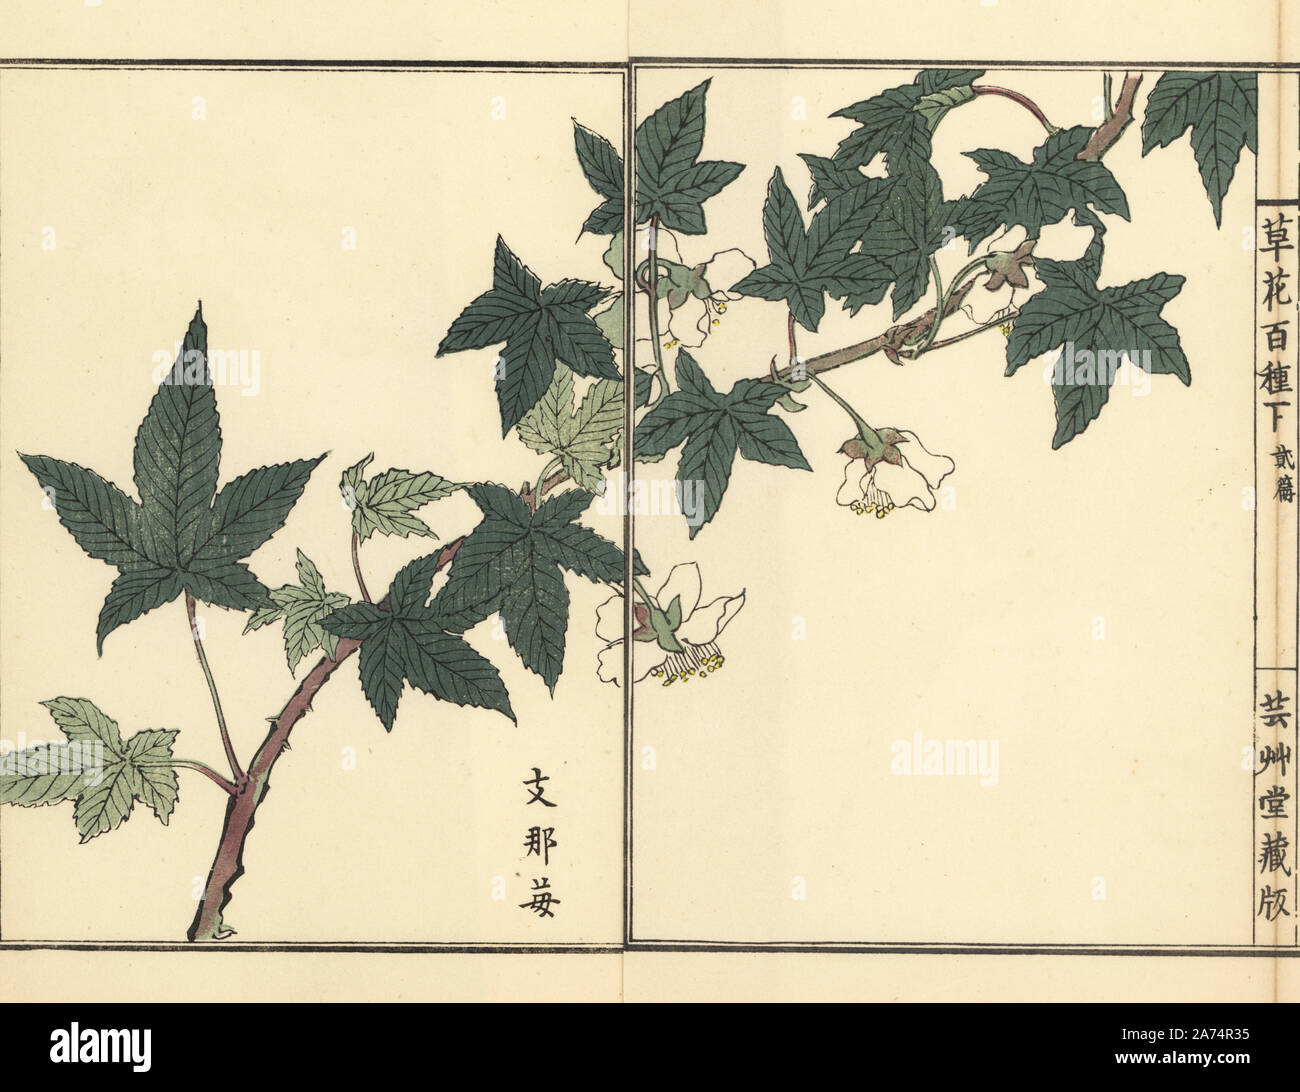 Shina ichigo or Korean strawberry, Fragaria ananassa. Handcoloured woodblock print by Kono Bairei from Kusa Bana Hyakushu (One Hundred Varieties of Flowers), Tokyo, Yamada, 1901. Stock Photo